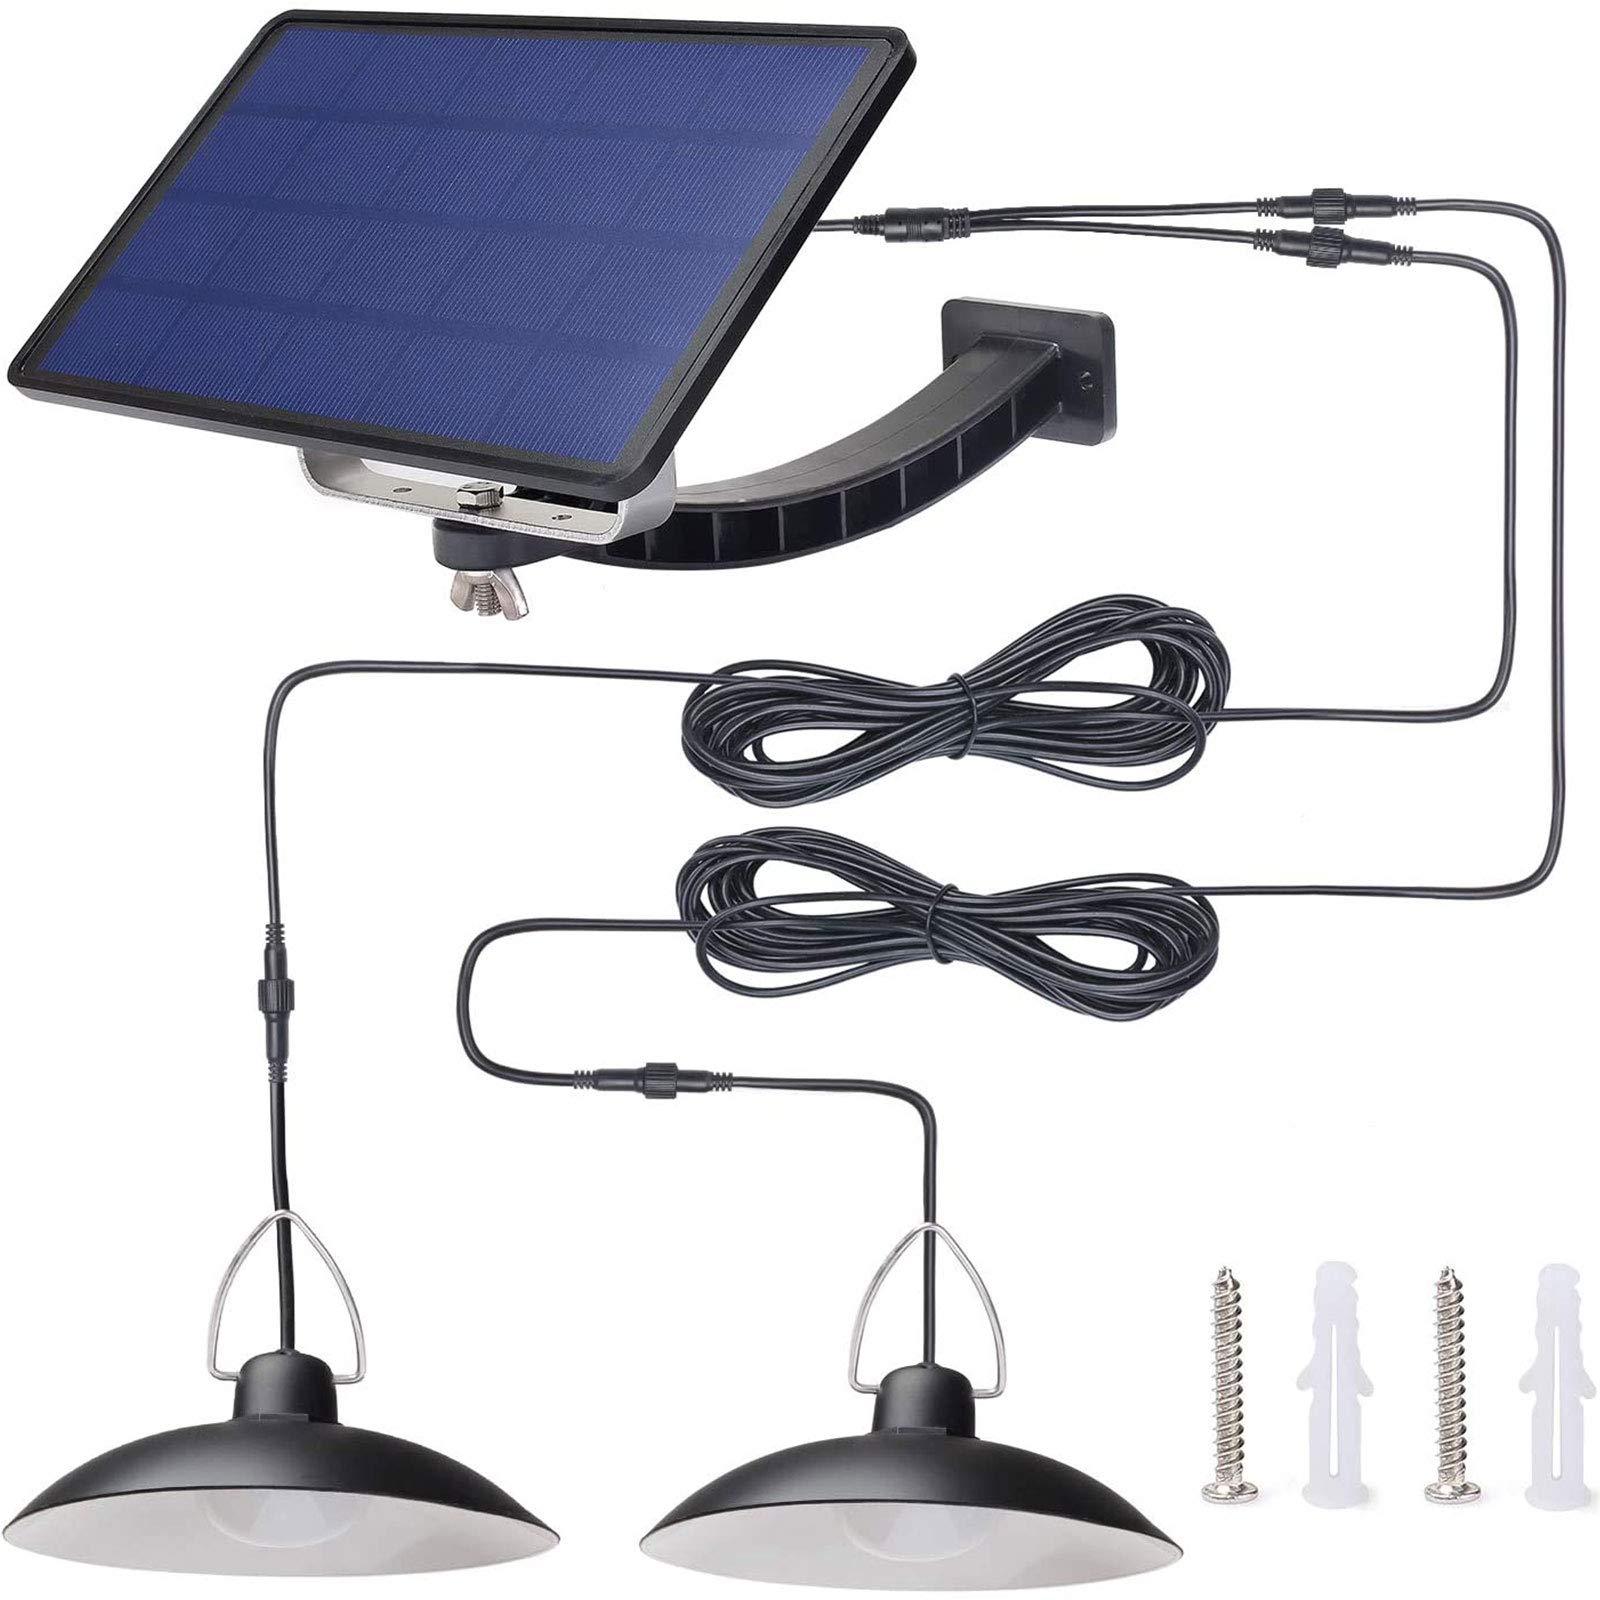 Lampe suspendue solaire séparable - Avec télécommande - Panneau solaire réglable - Étanche IP65 (lumière chaude)